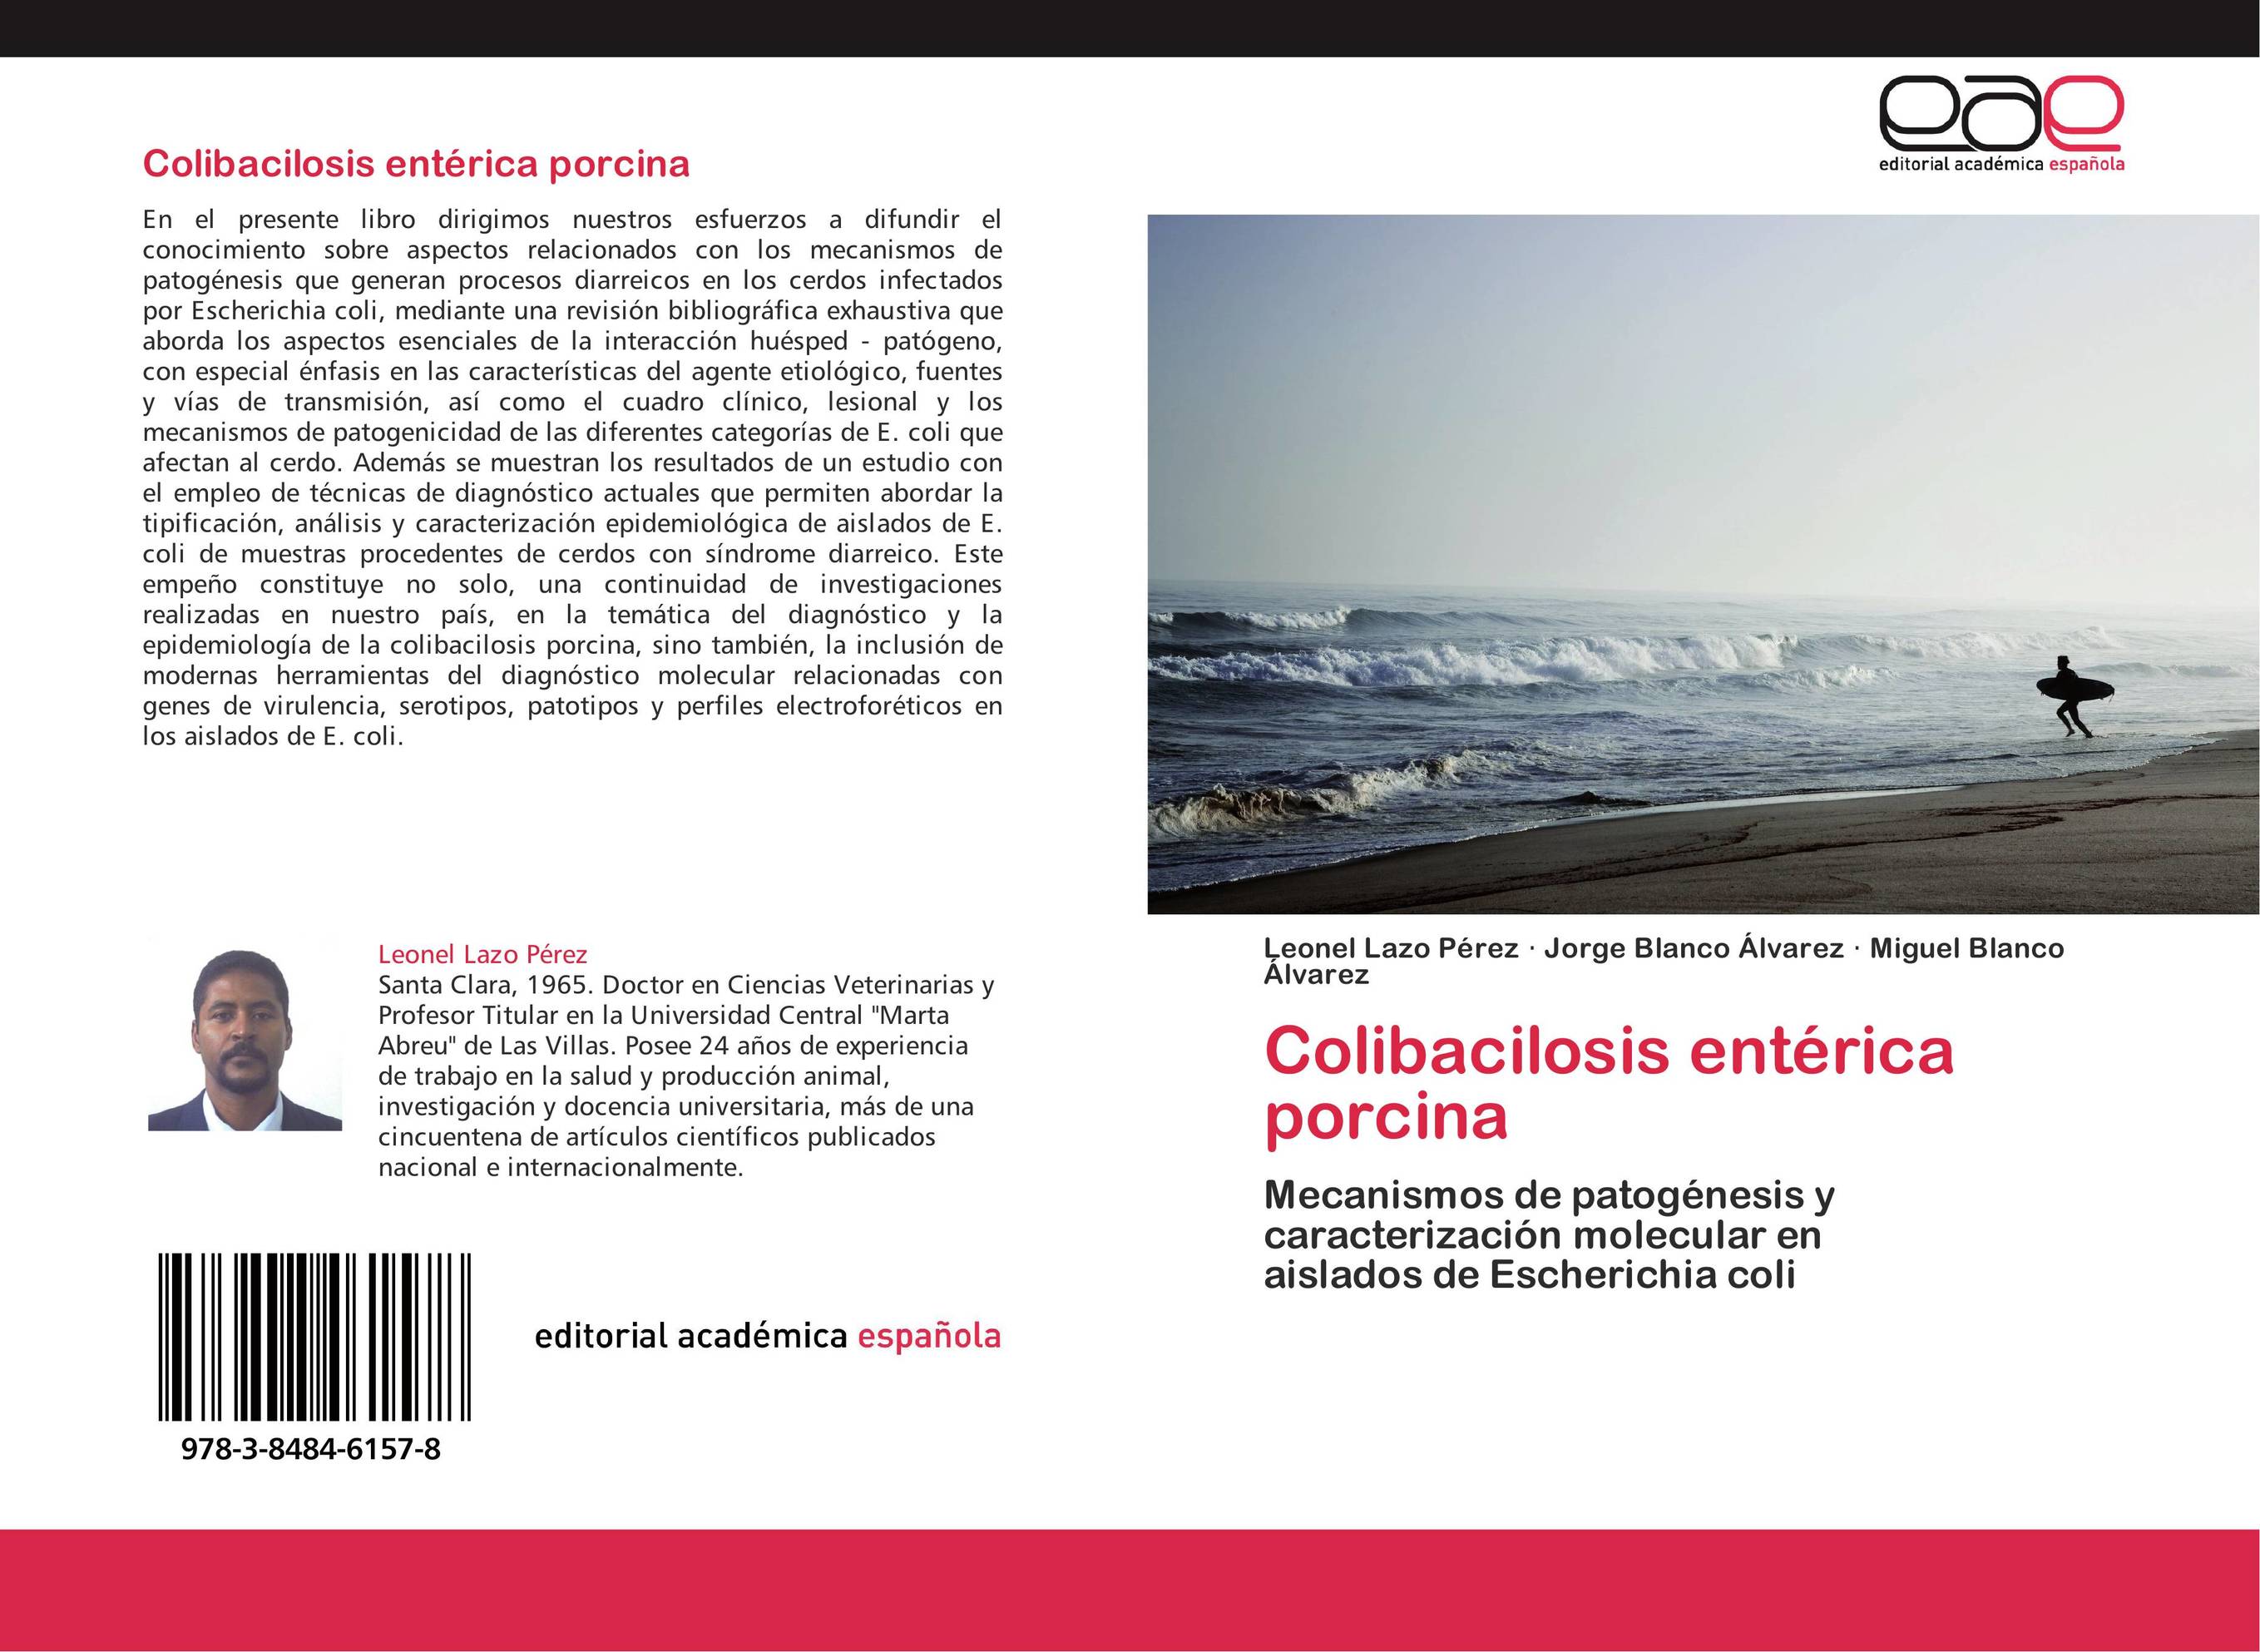 Colibacilosis entérica porcina